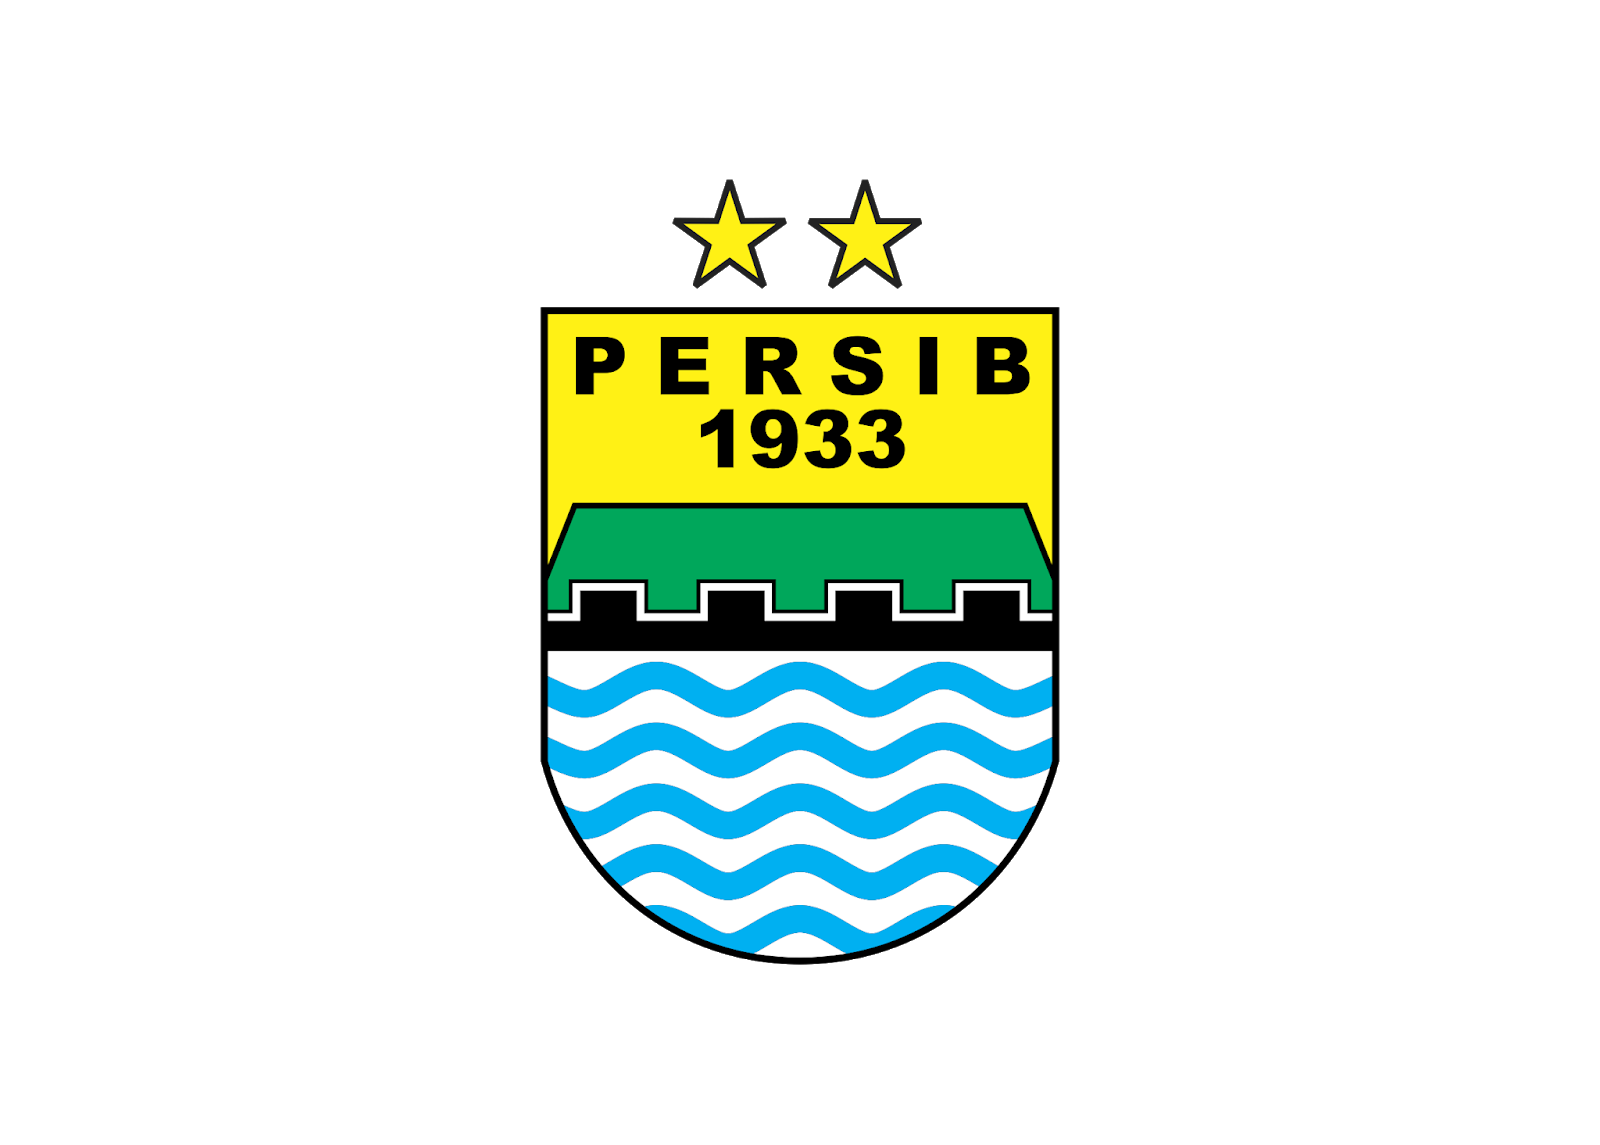 Logo Persib Bandung 1933 Format CDR | Free Download - Logo Desain Free